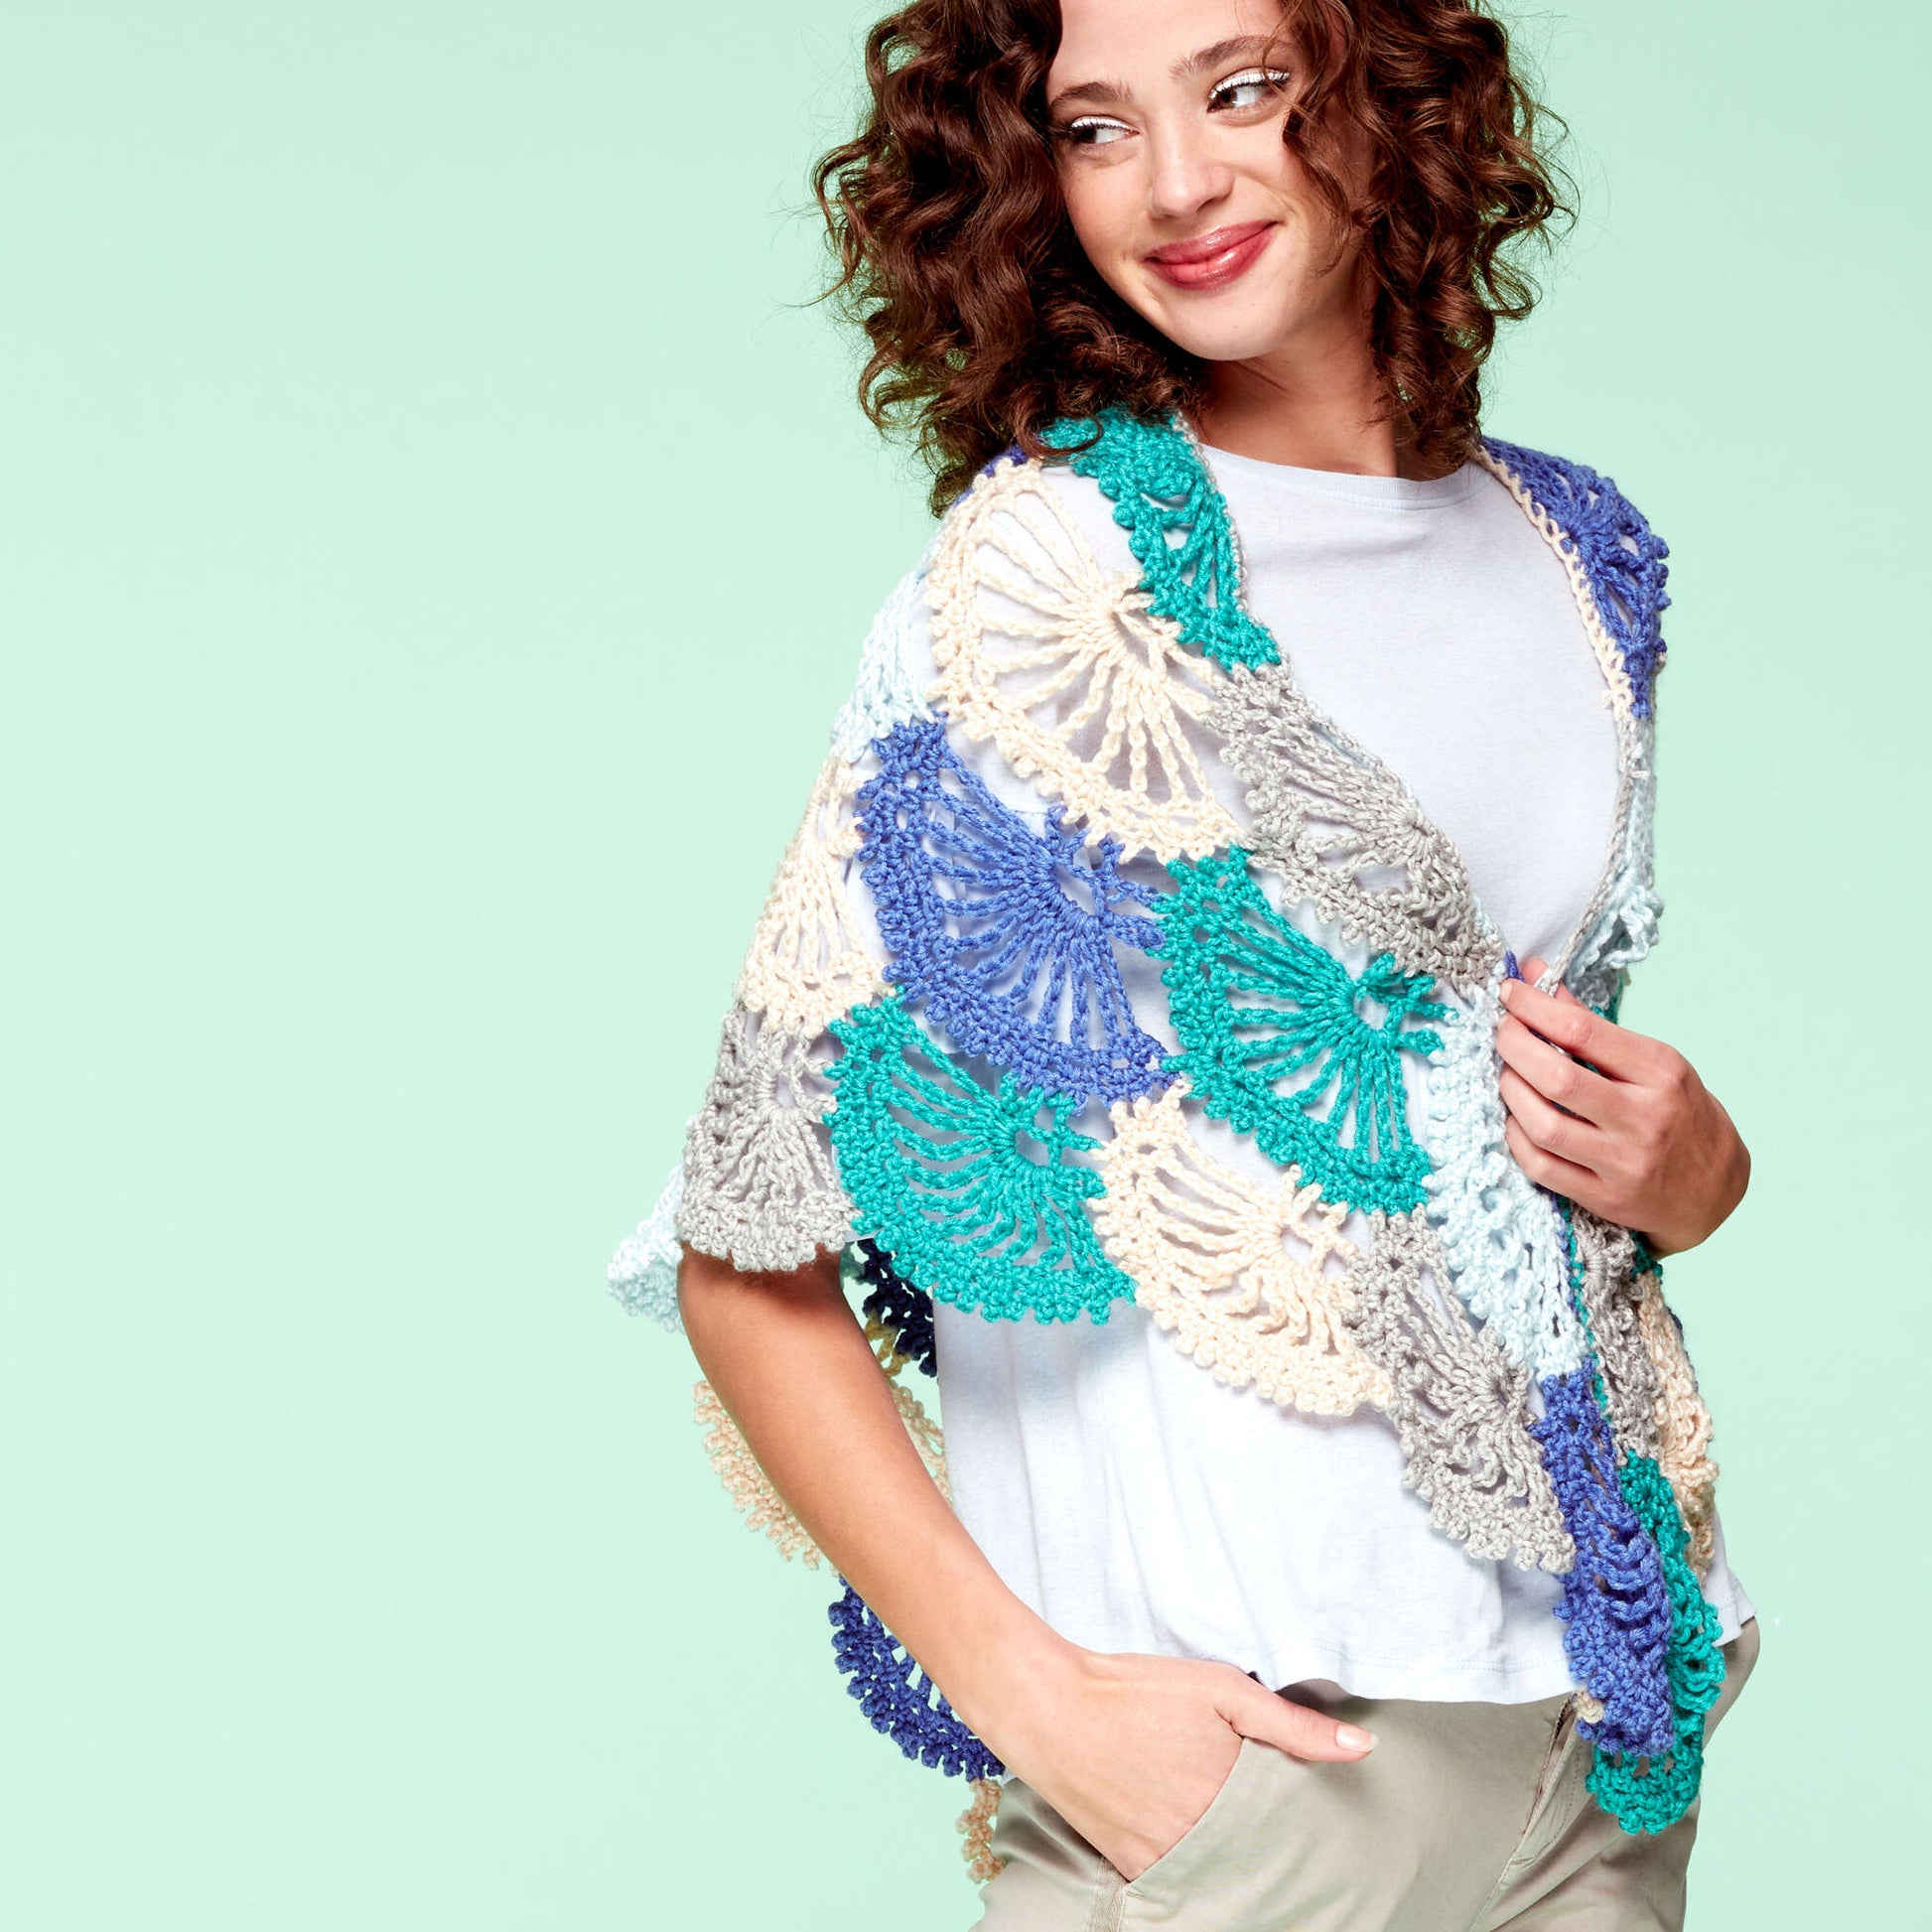 Free Caron X Pantone Lace Fans Crochet Shawl Pattern